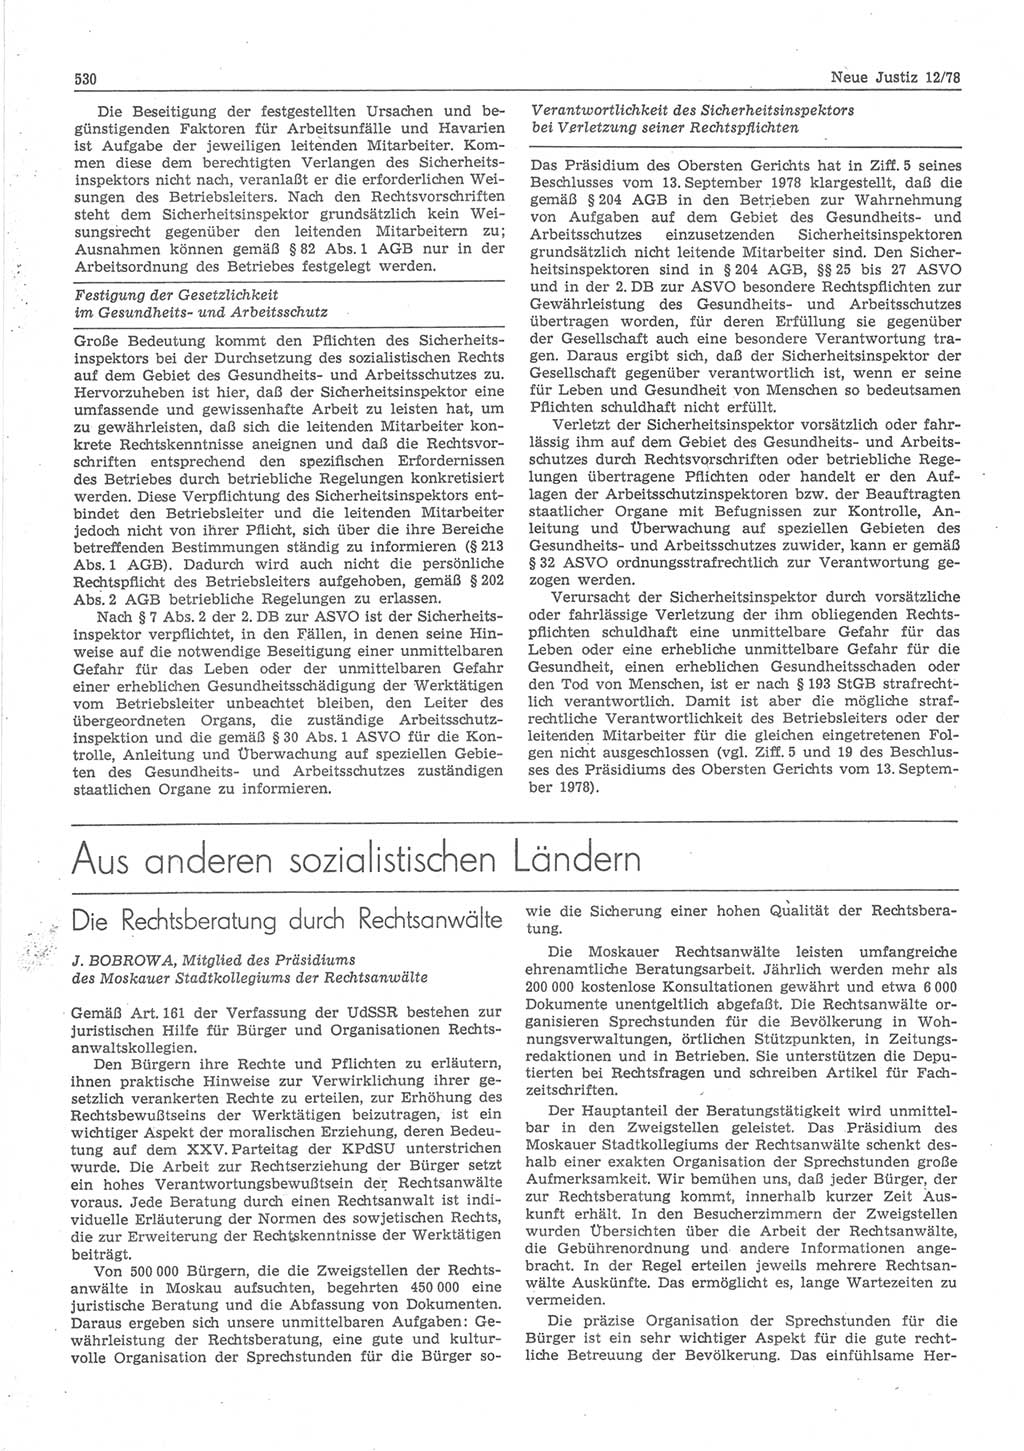 Neue Justiz (NJ), Zeitschrift für sozialistisches Recht und Gesetzlichkeit [Deutsche Demokratische Republik (DDR)], 32. Jahrgang 1978, Seite 530 (NJ DDR 1978, S. 530)